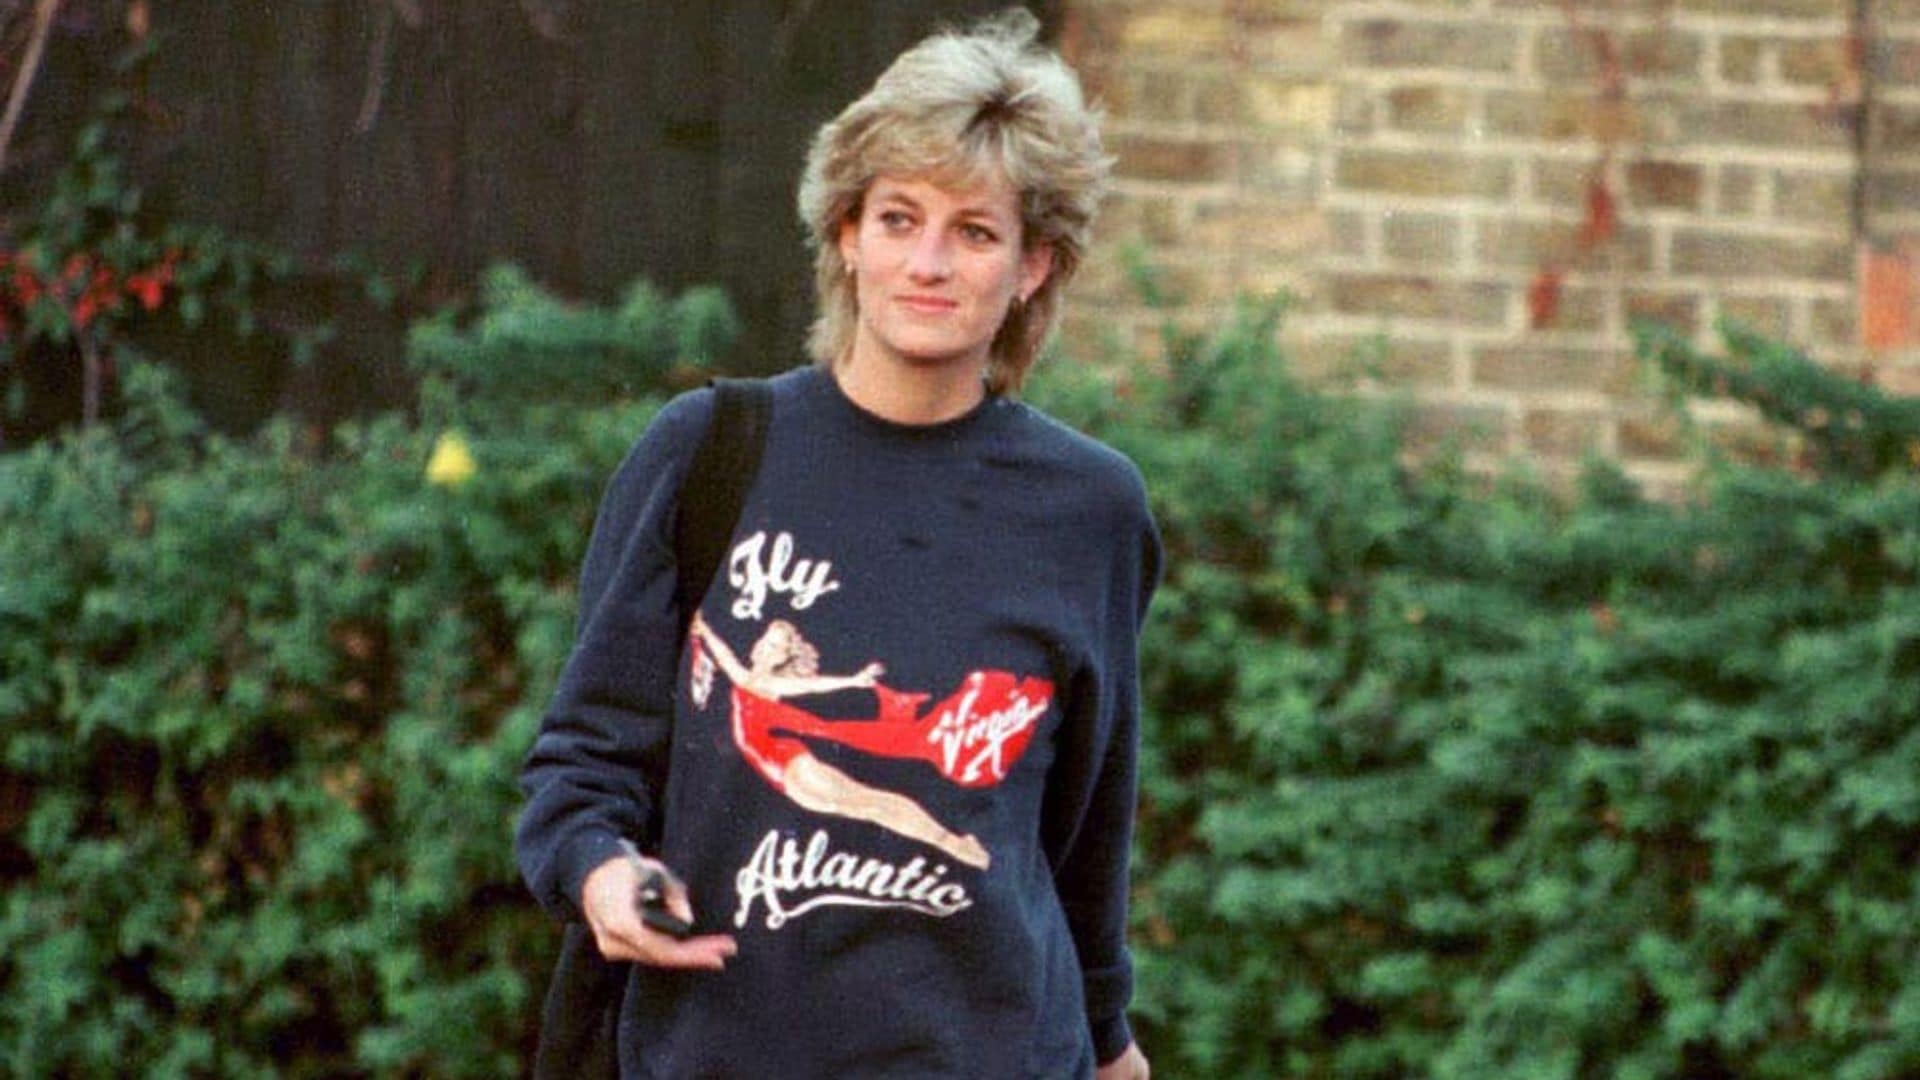 El look deportivo de la princesa Diana es perfecto para salir y estar en casa